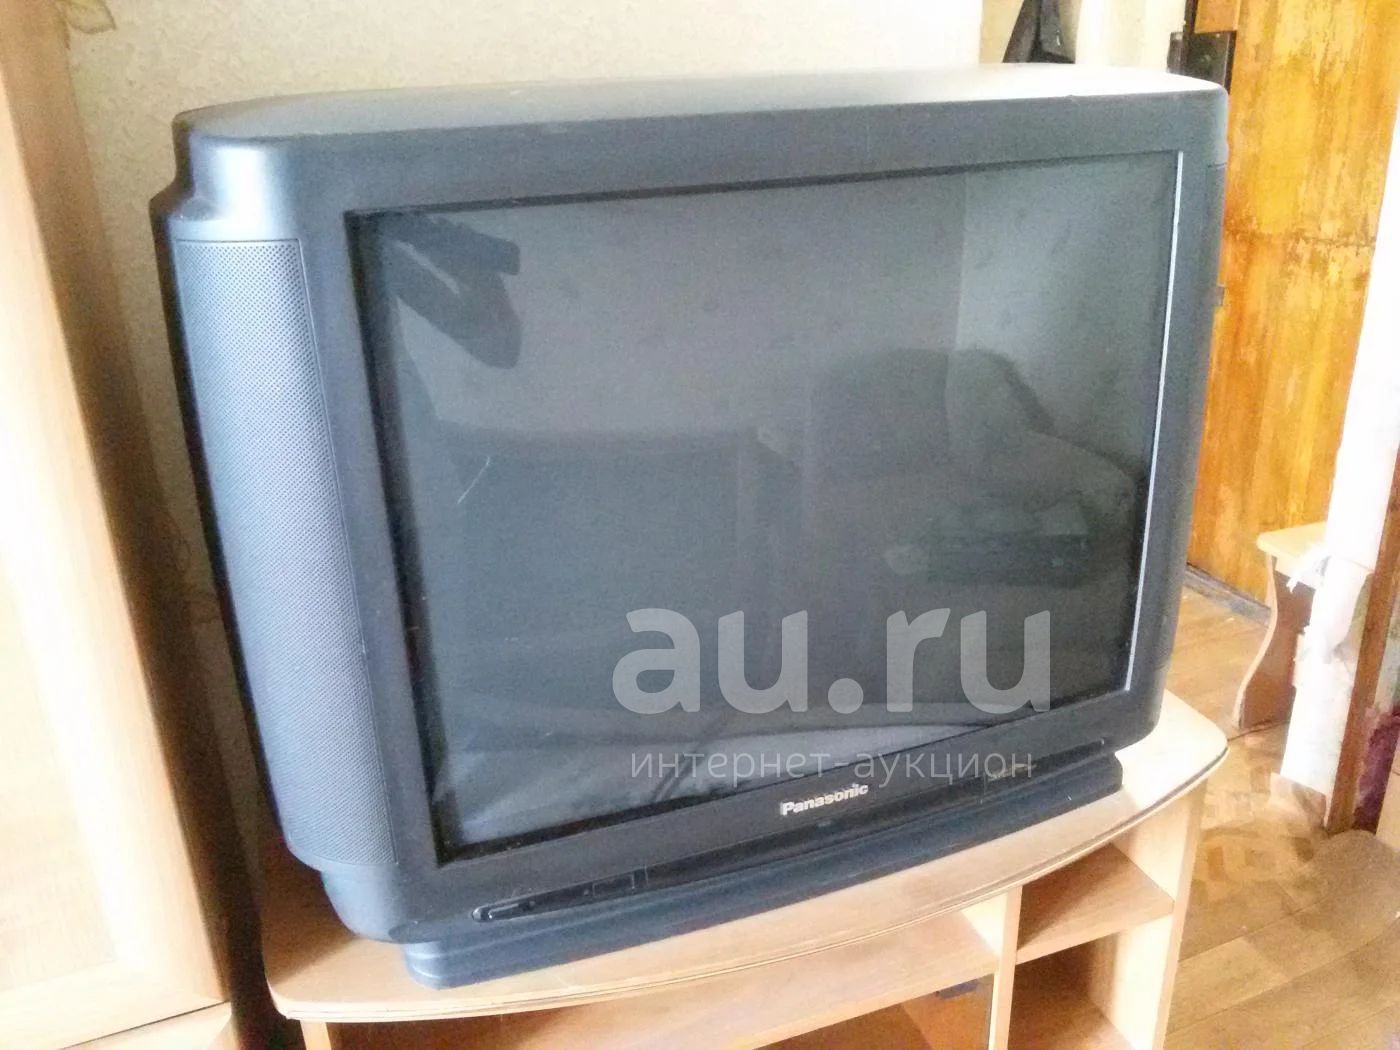 Бу телевизоры в красноярске